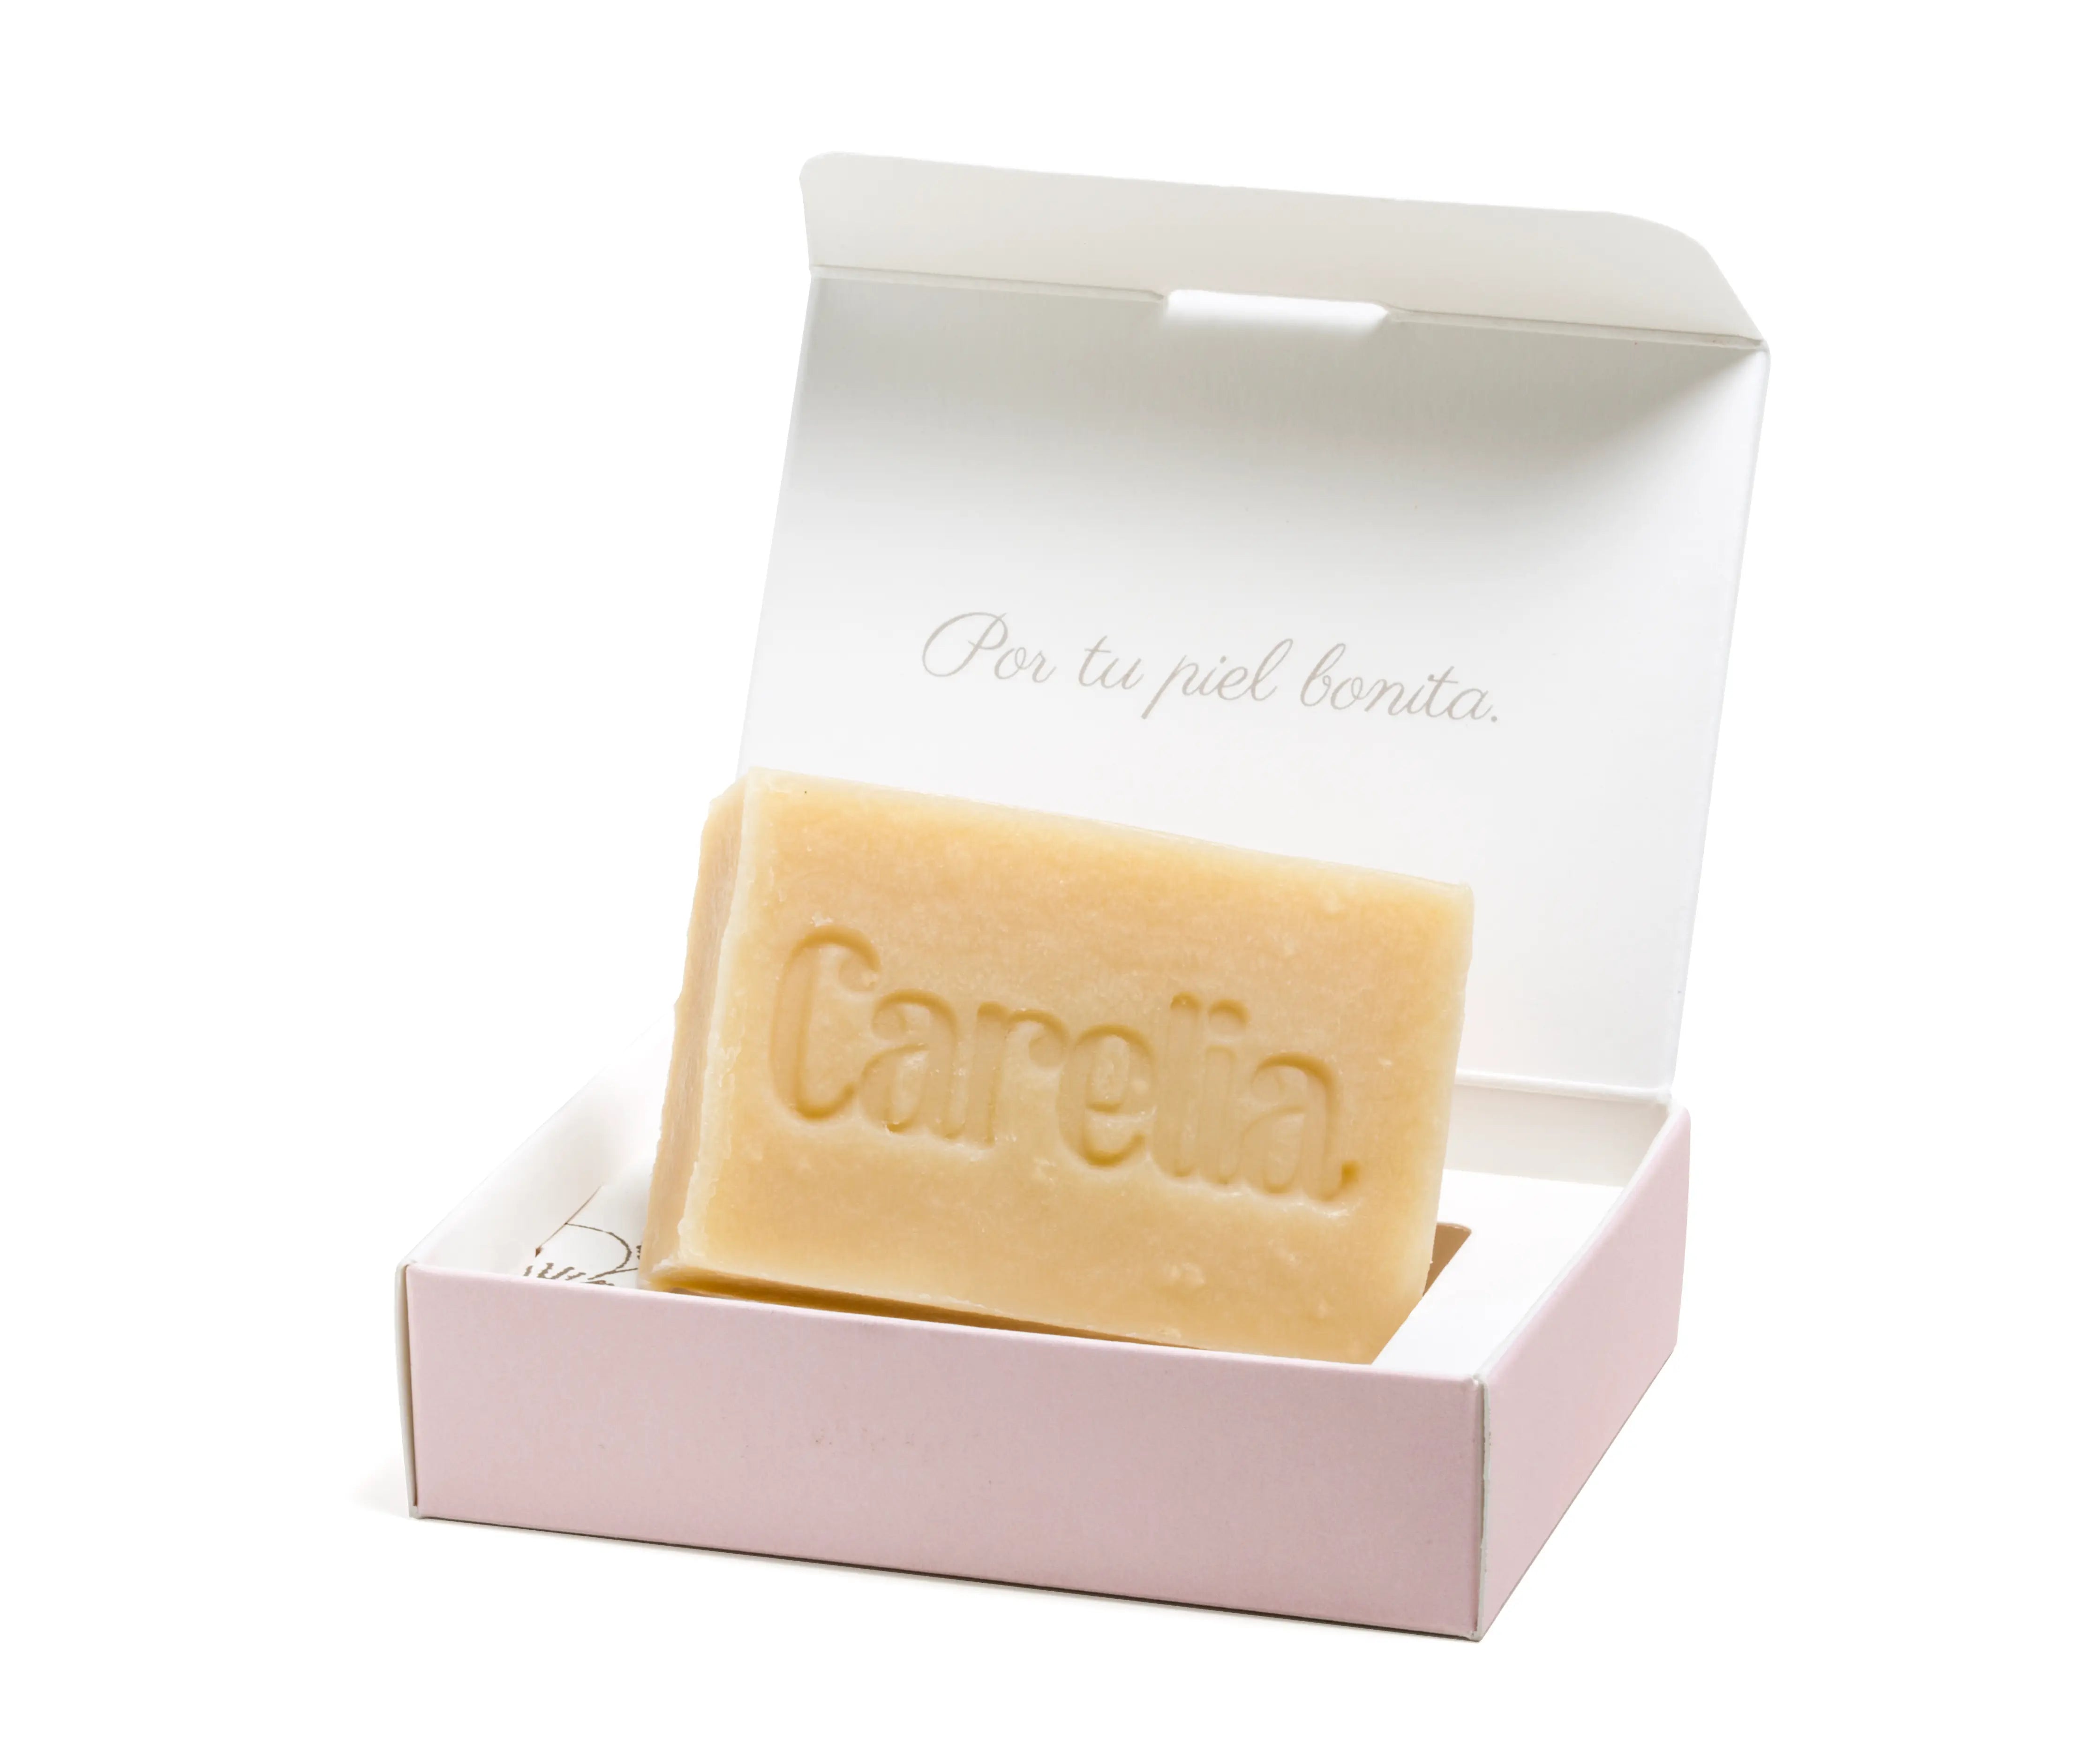 Het Rozenbottel zeepblok van Carelia Natural Care is een plantaardige, biologisch zeepblok om je huid en haren mee te reinigen voor het gehele gezin.